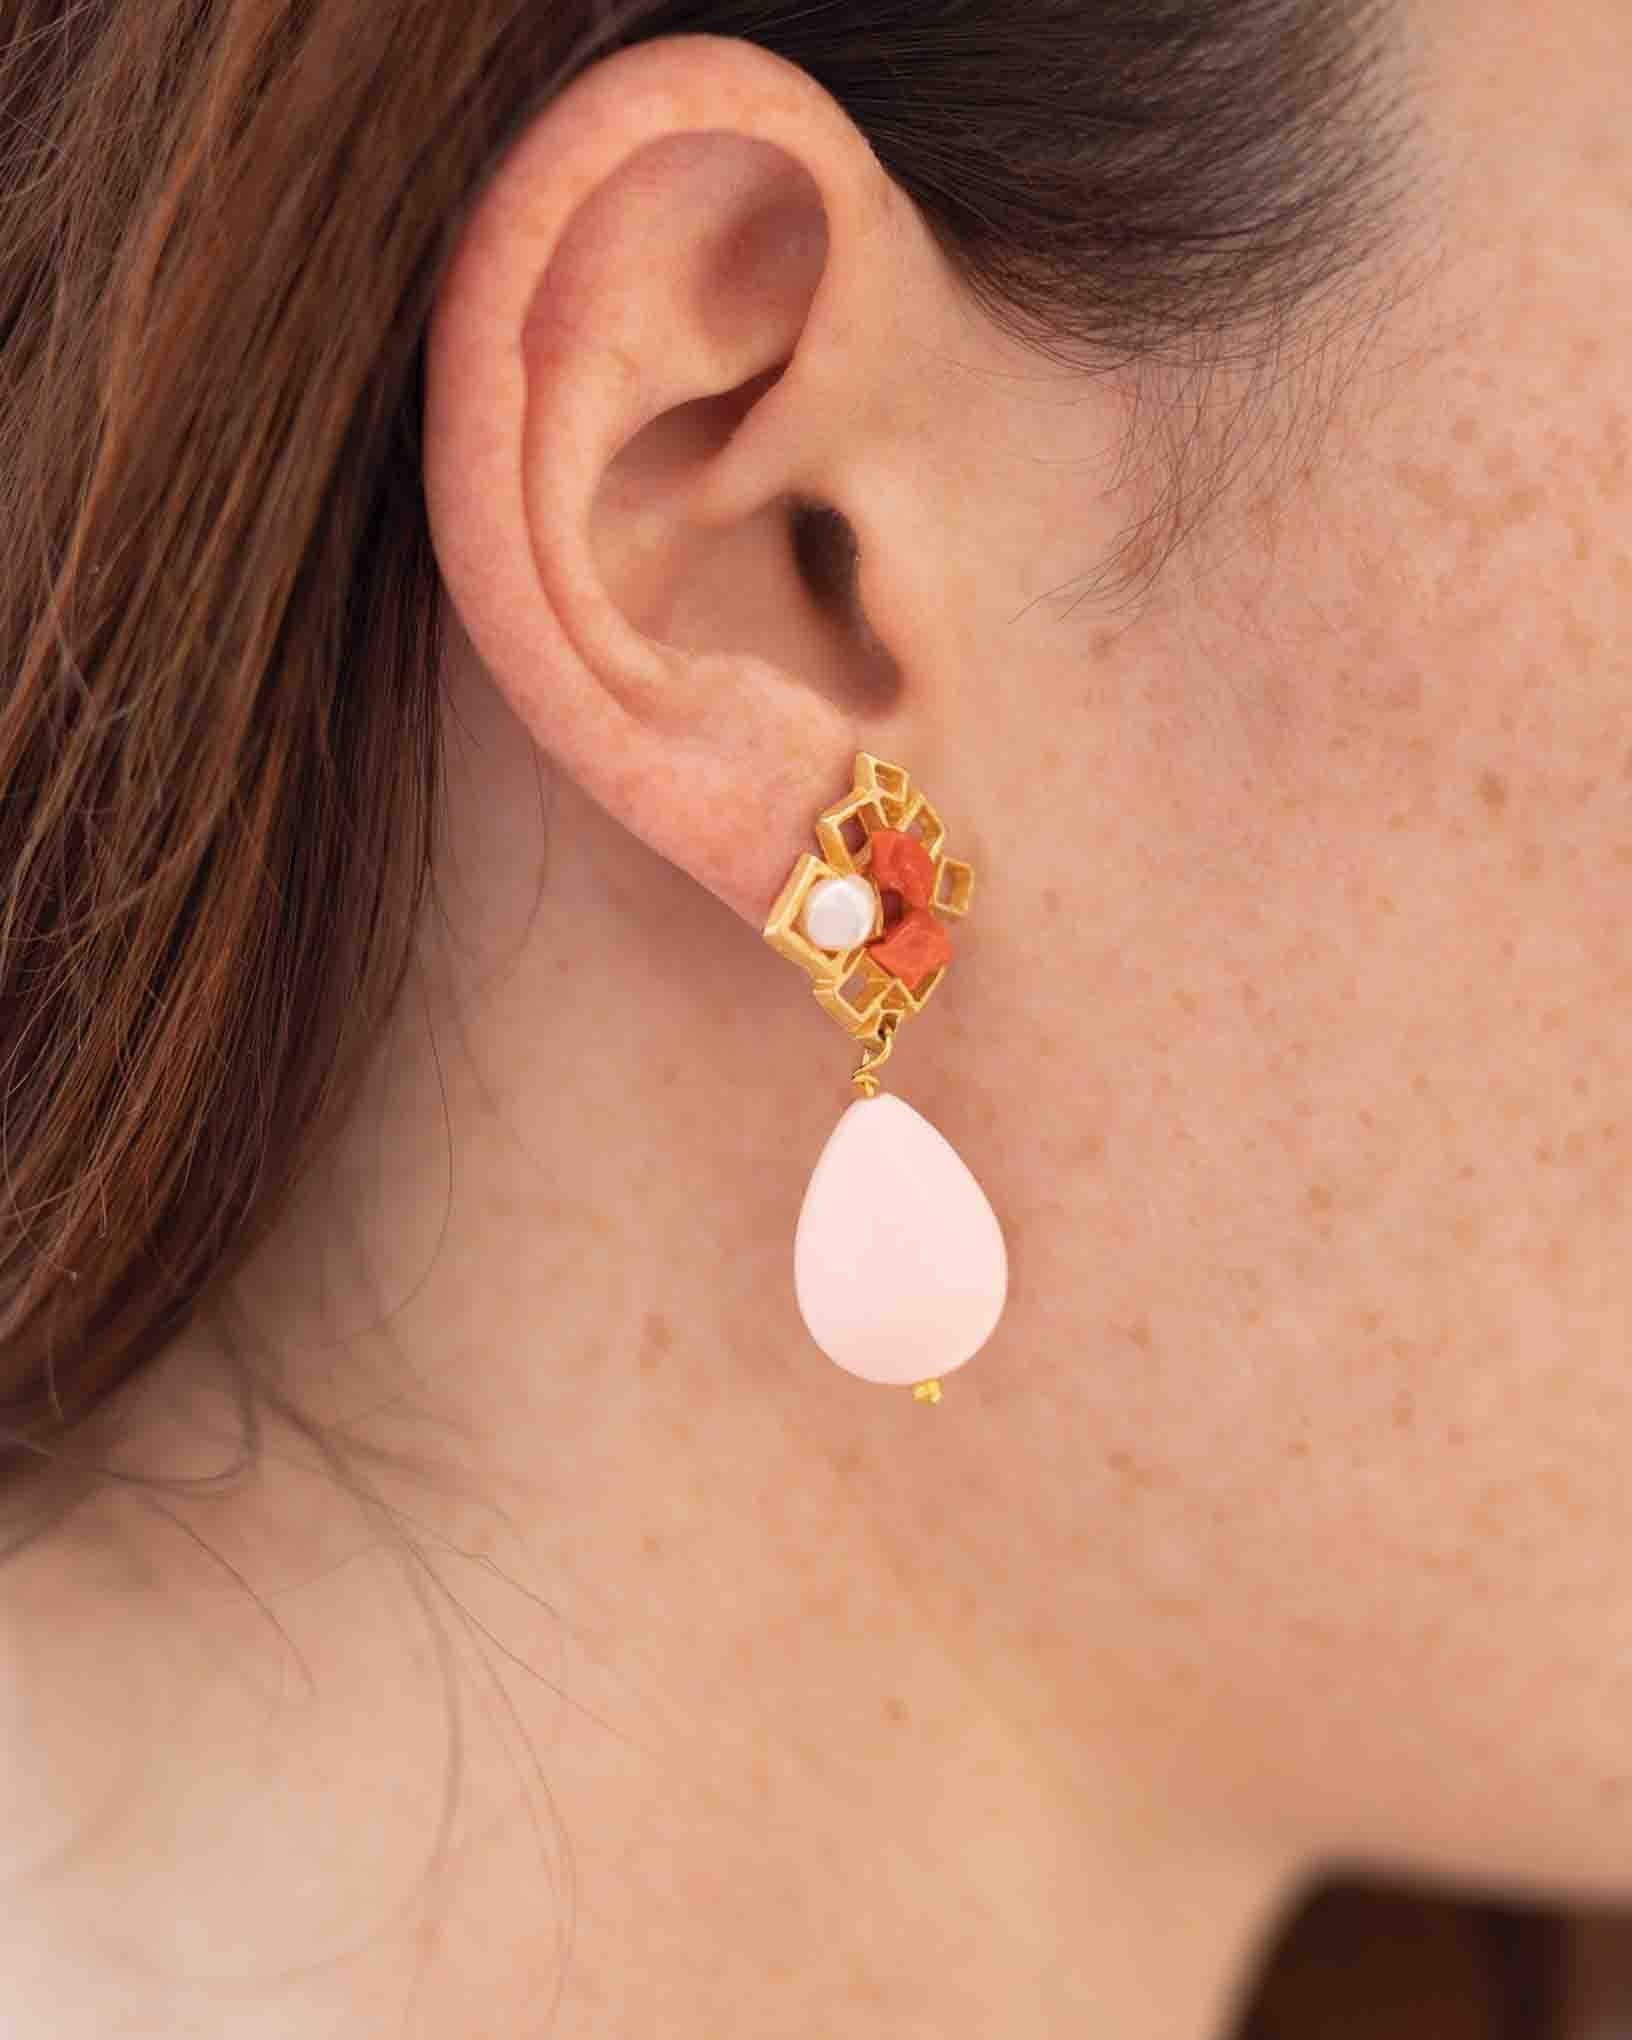 Ohrring Solano aus der Kollektion Perle e Coralli von Donna Rachele Jewelry